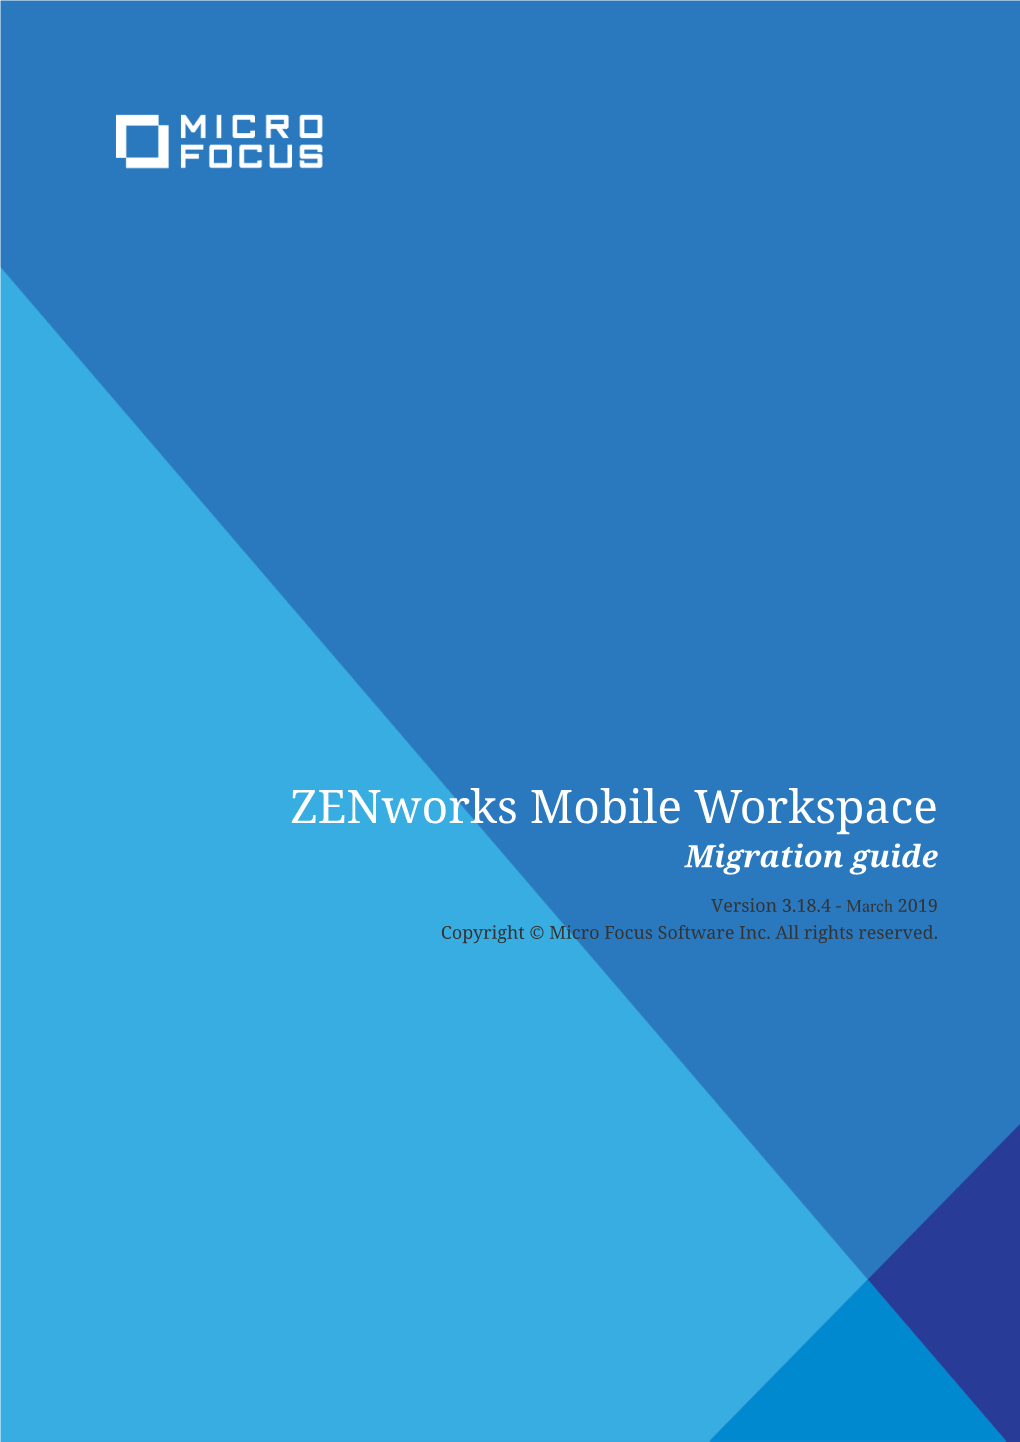 Zenworks Mobile Workspace Migration Guide